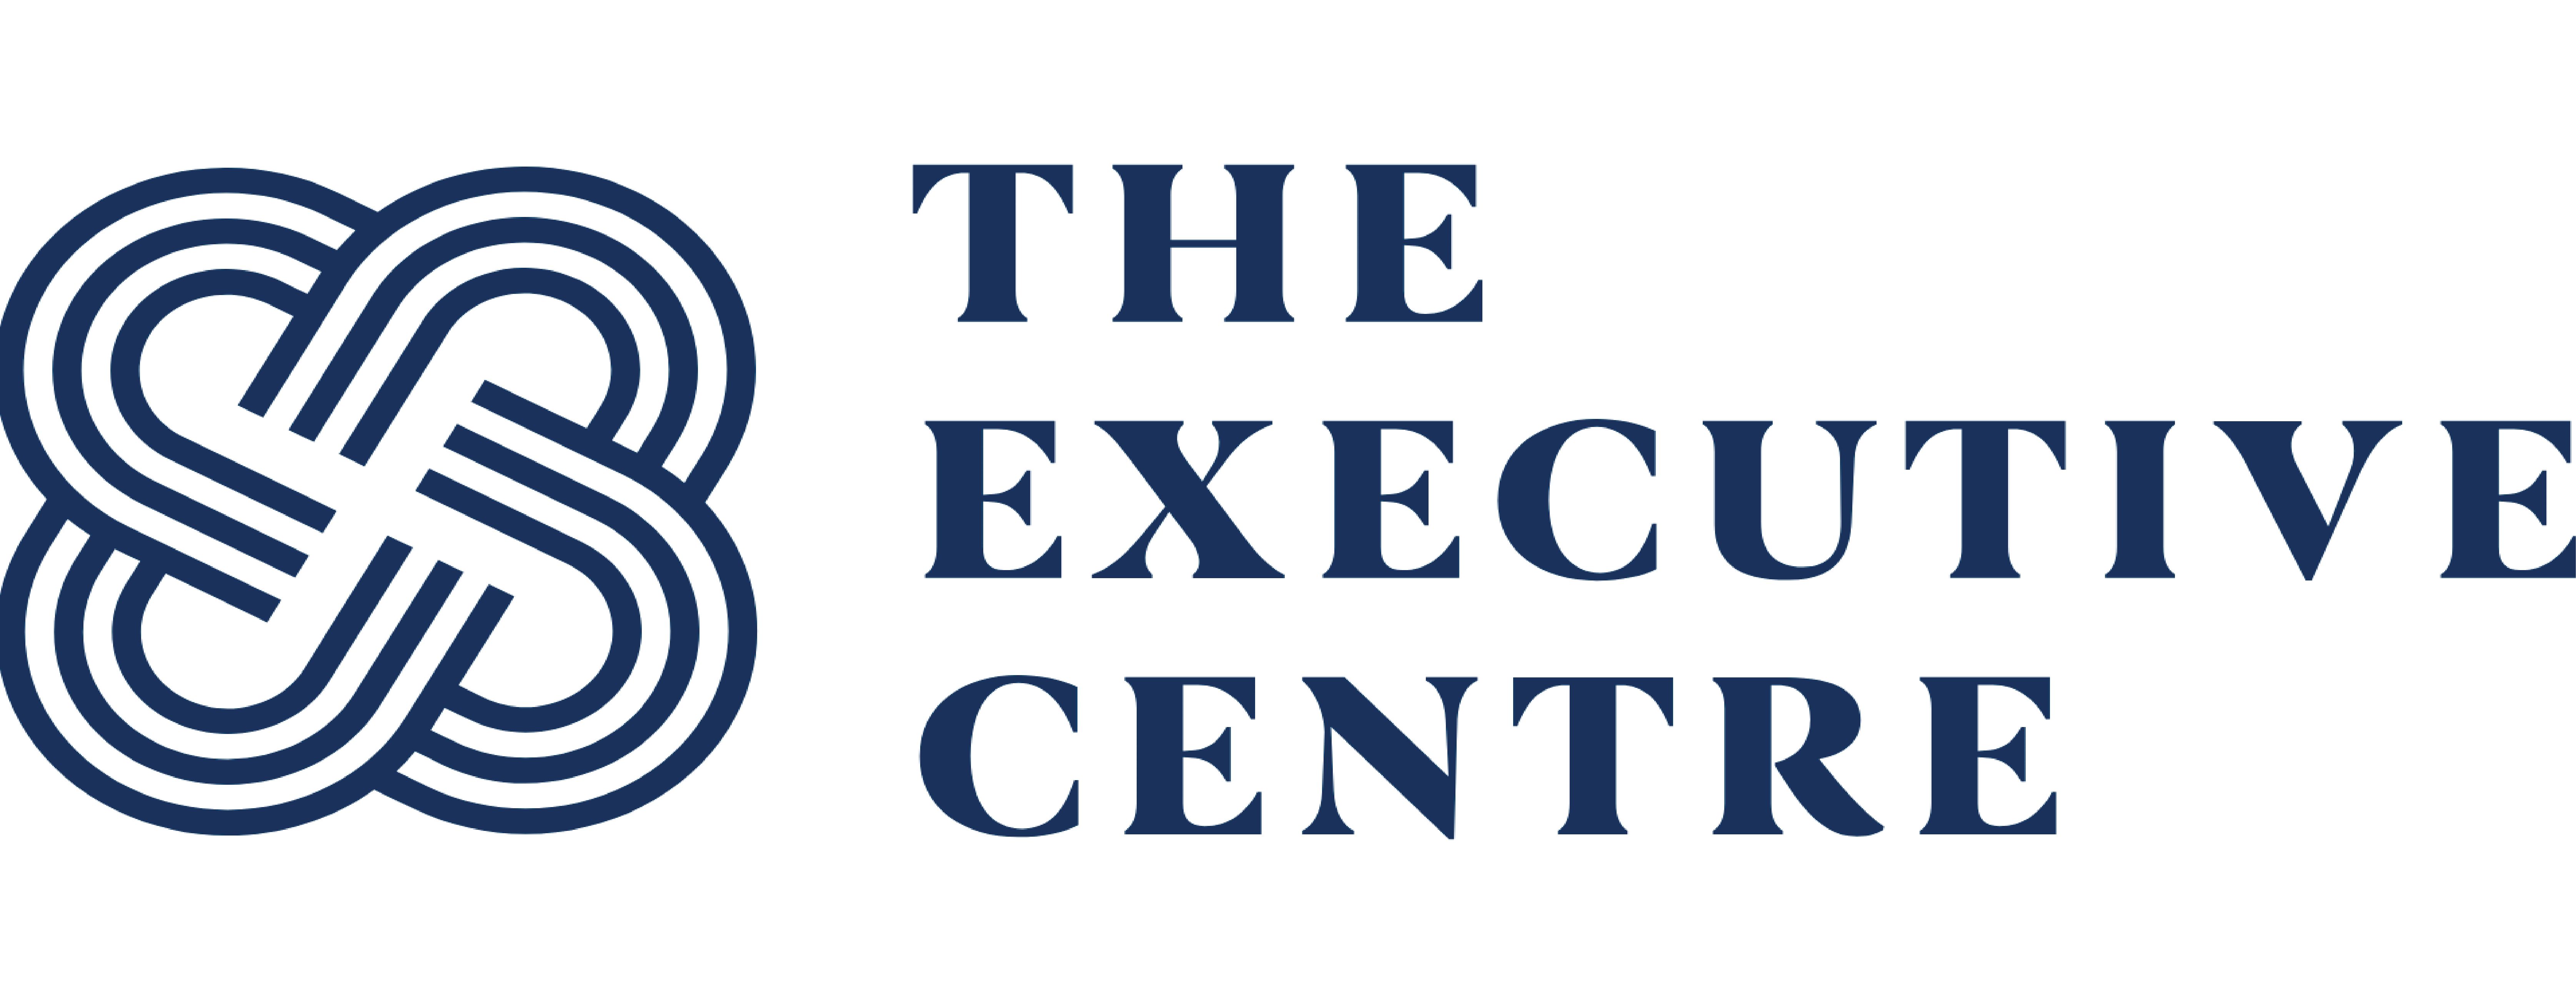 the executive center